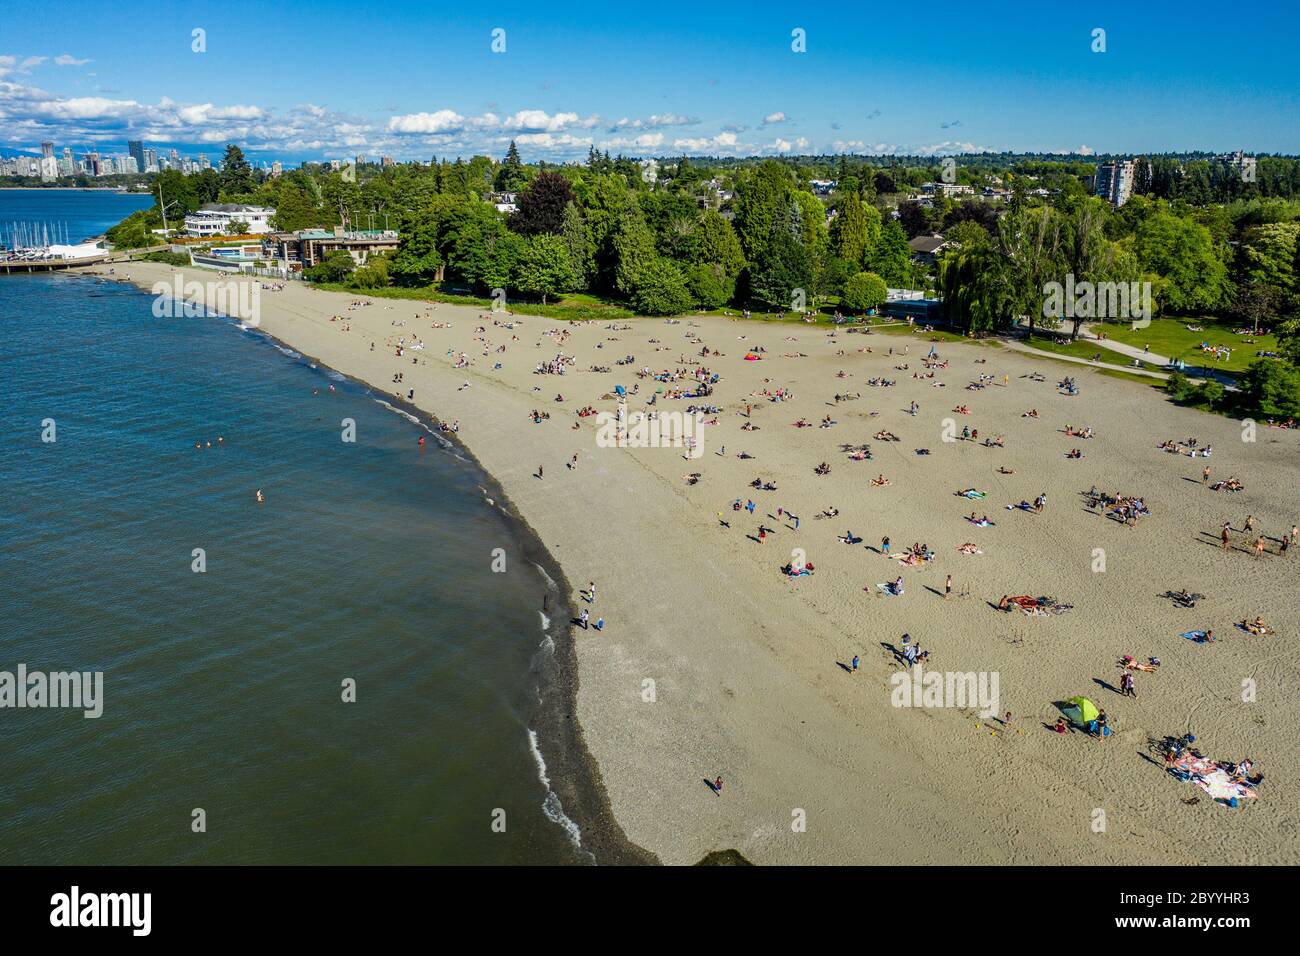 VANCOUVER, KANADA - 7. JUNI 2020: Menschenmassen treffen sich an einem Strand nach sozialen Distanzierungsregeln, nachdem Einschränkungen von der COVID-19 Pandemie abmildern Stockfoto